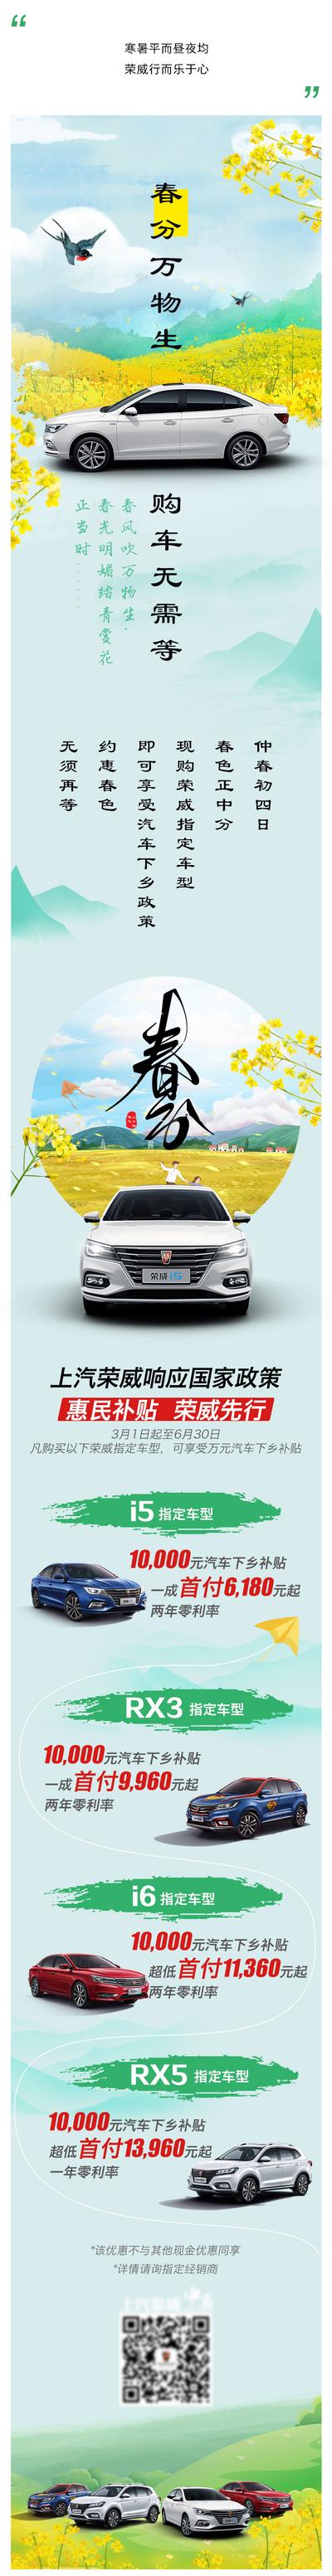 南门网 广告 海报 节气 汽车 春分 长图 优惠 政策